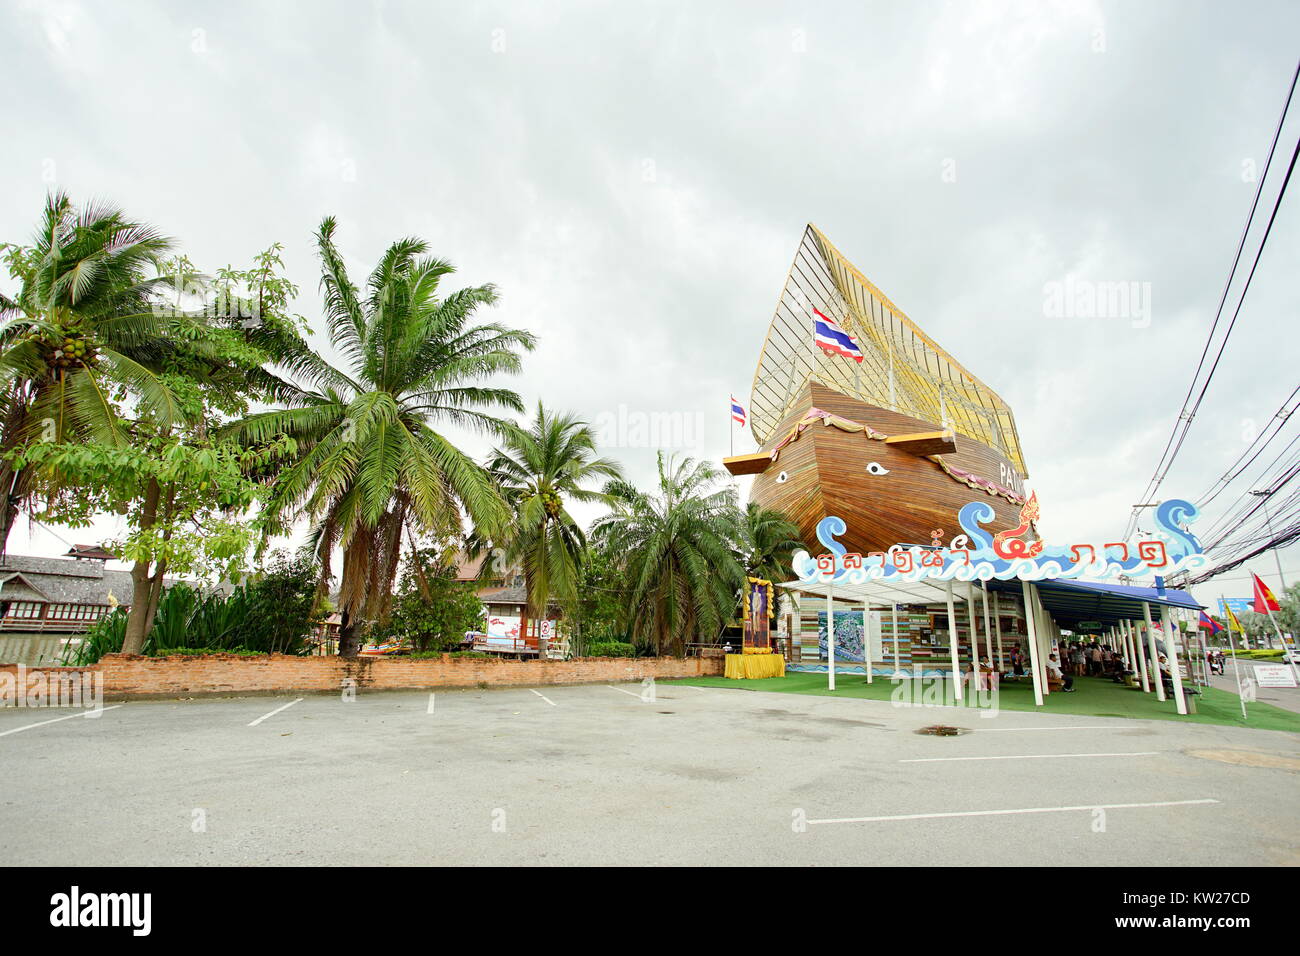 CHONBURI, Thailand - 11 November, 2017: Innenansicht des Pattaya Floating Market. Dies ist beliebtes Reiseziel in Pattaya, Chonburi, Thailand. Stockfoto